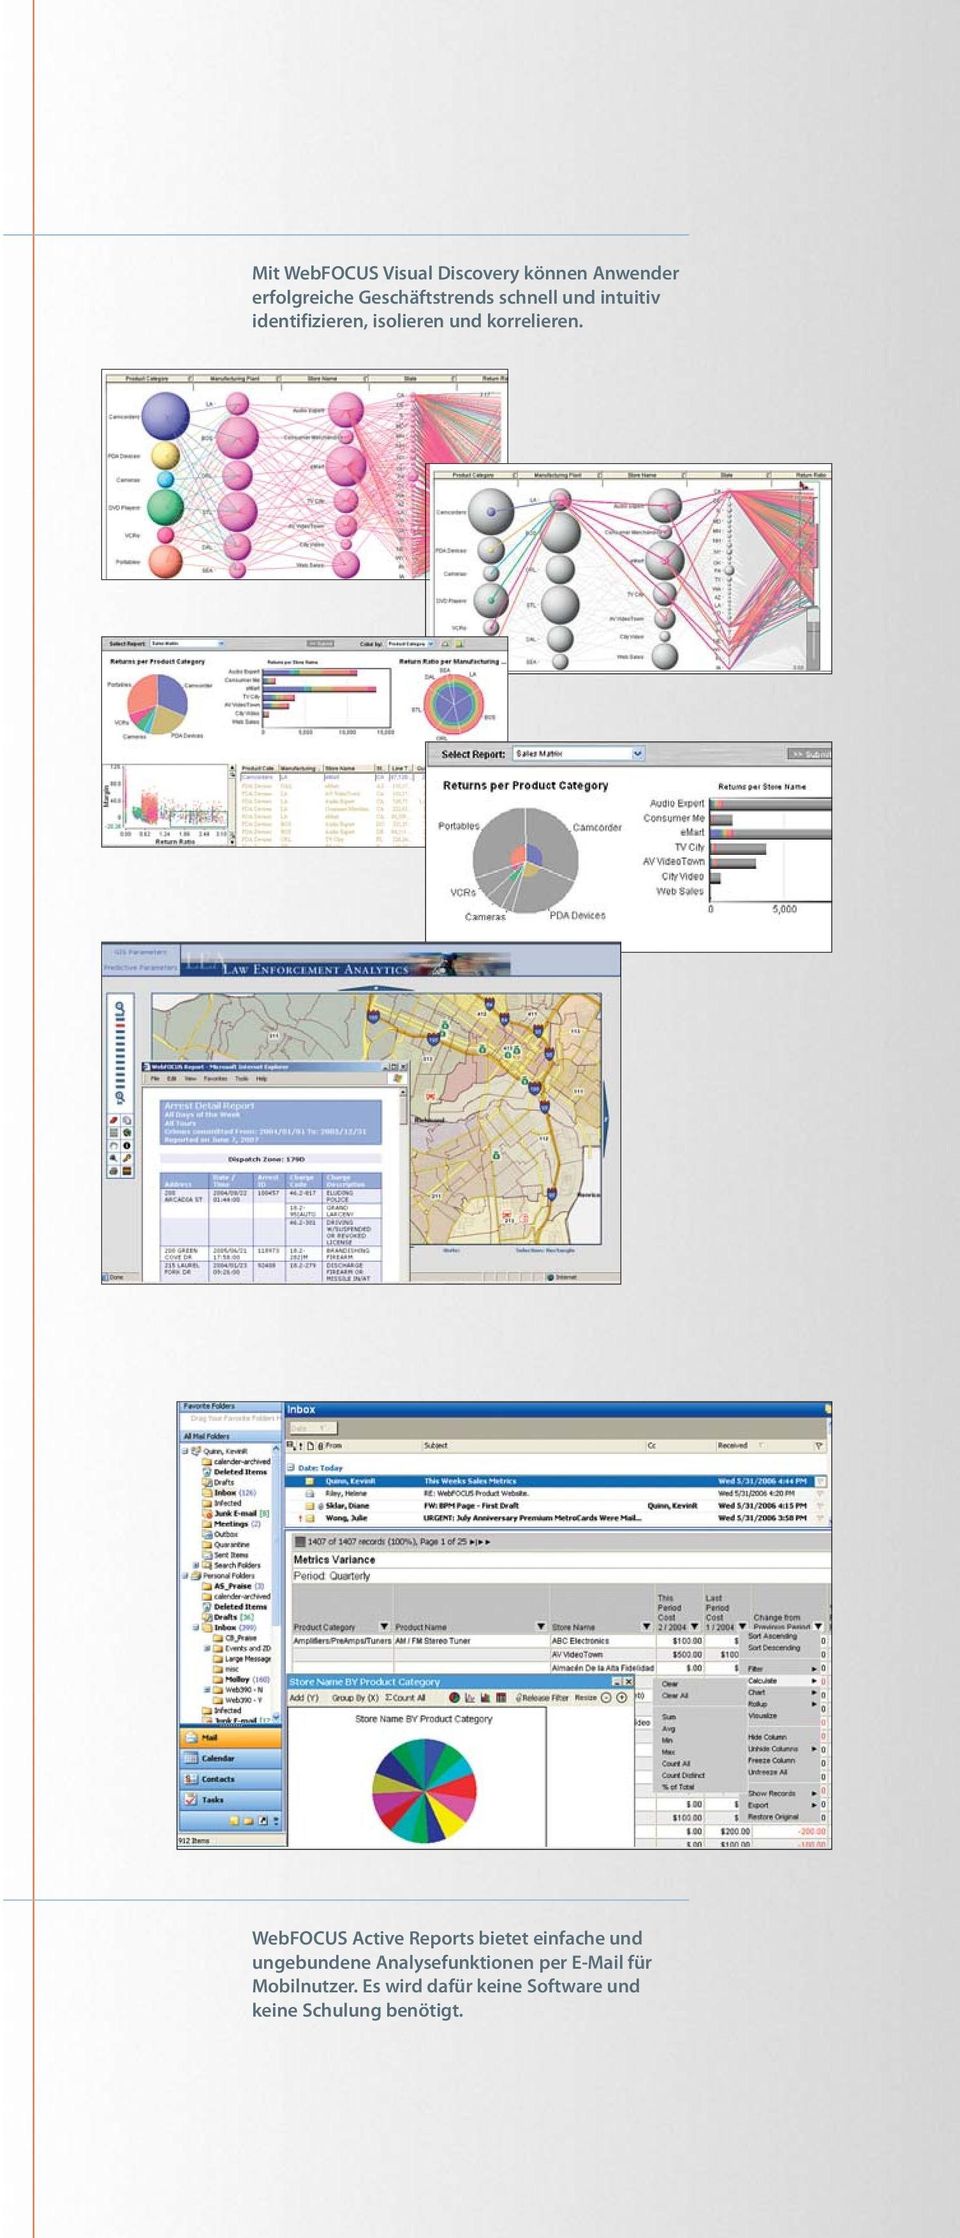 WebFOCUS Active Reports bietet einfache und ungebundene Analysefunktionen